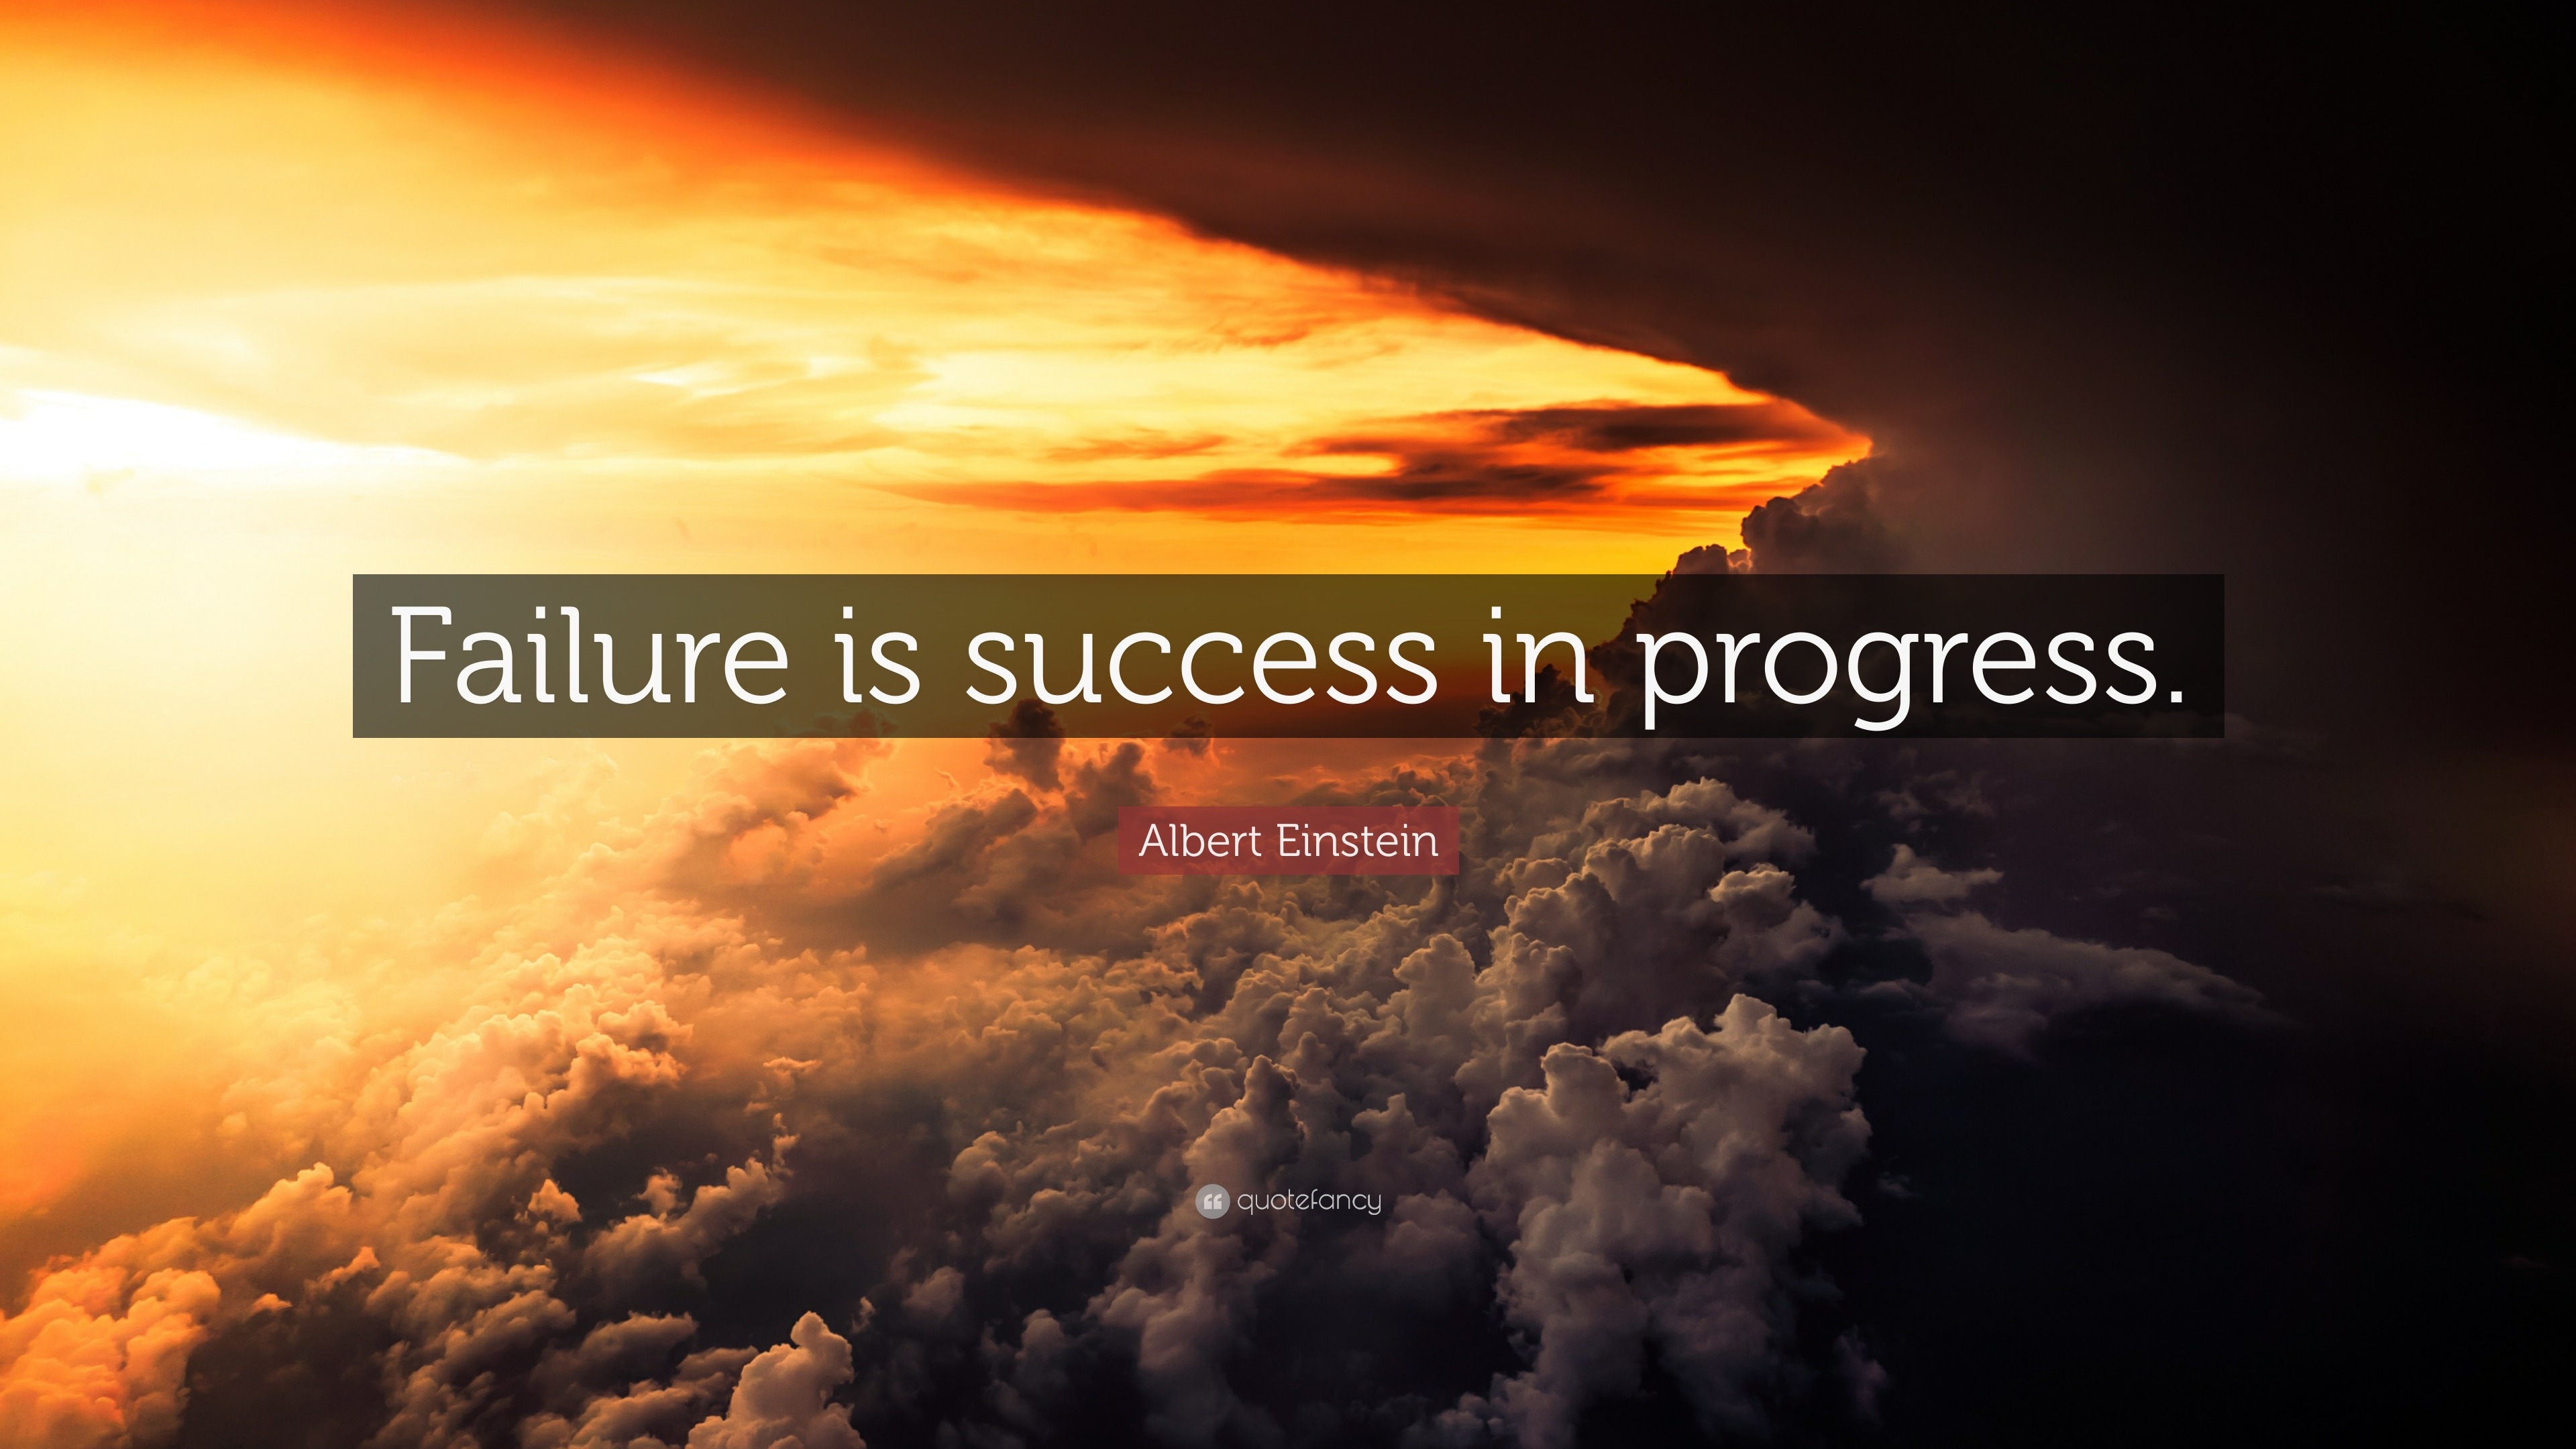 Albert Einstein Quote: “Failure is success in progress.”